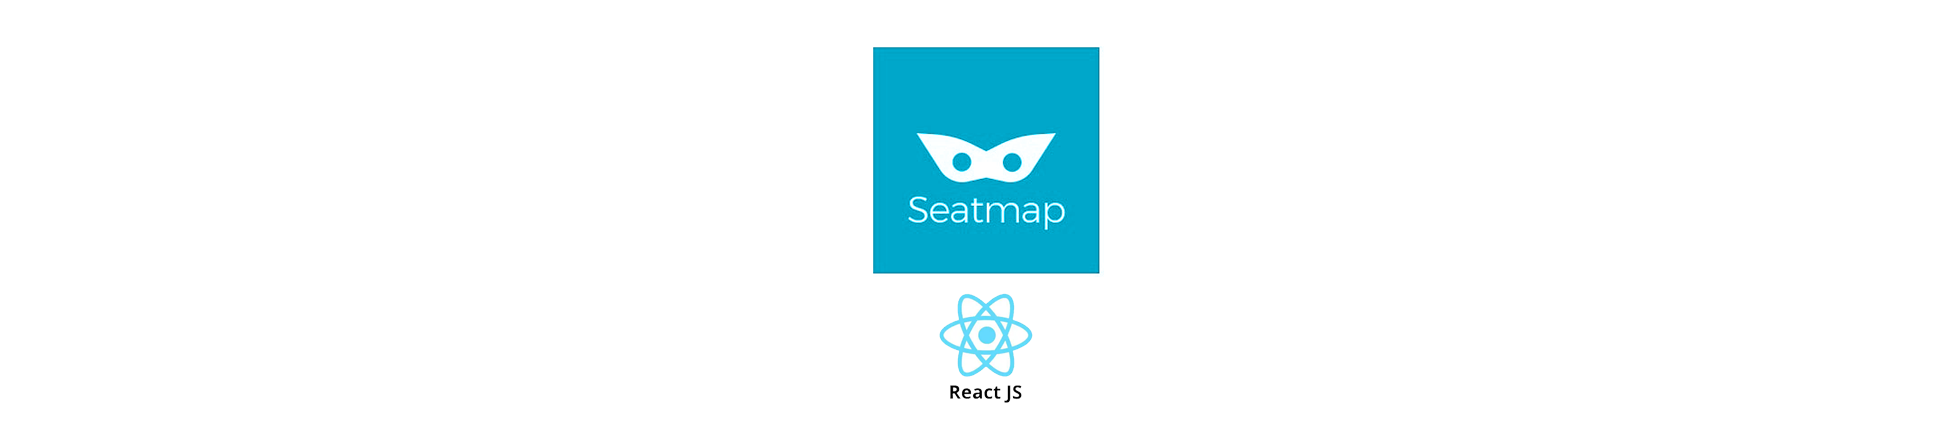 Seatmap - React